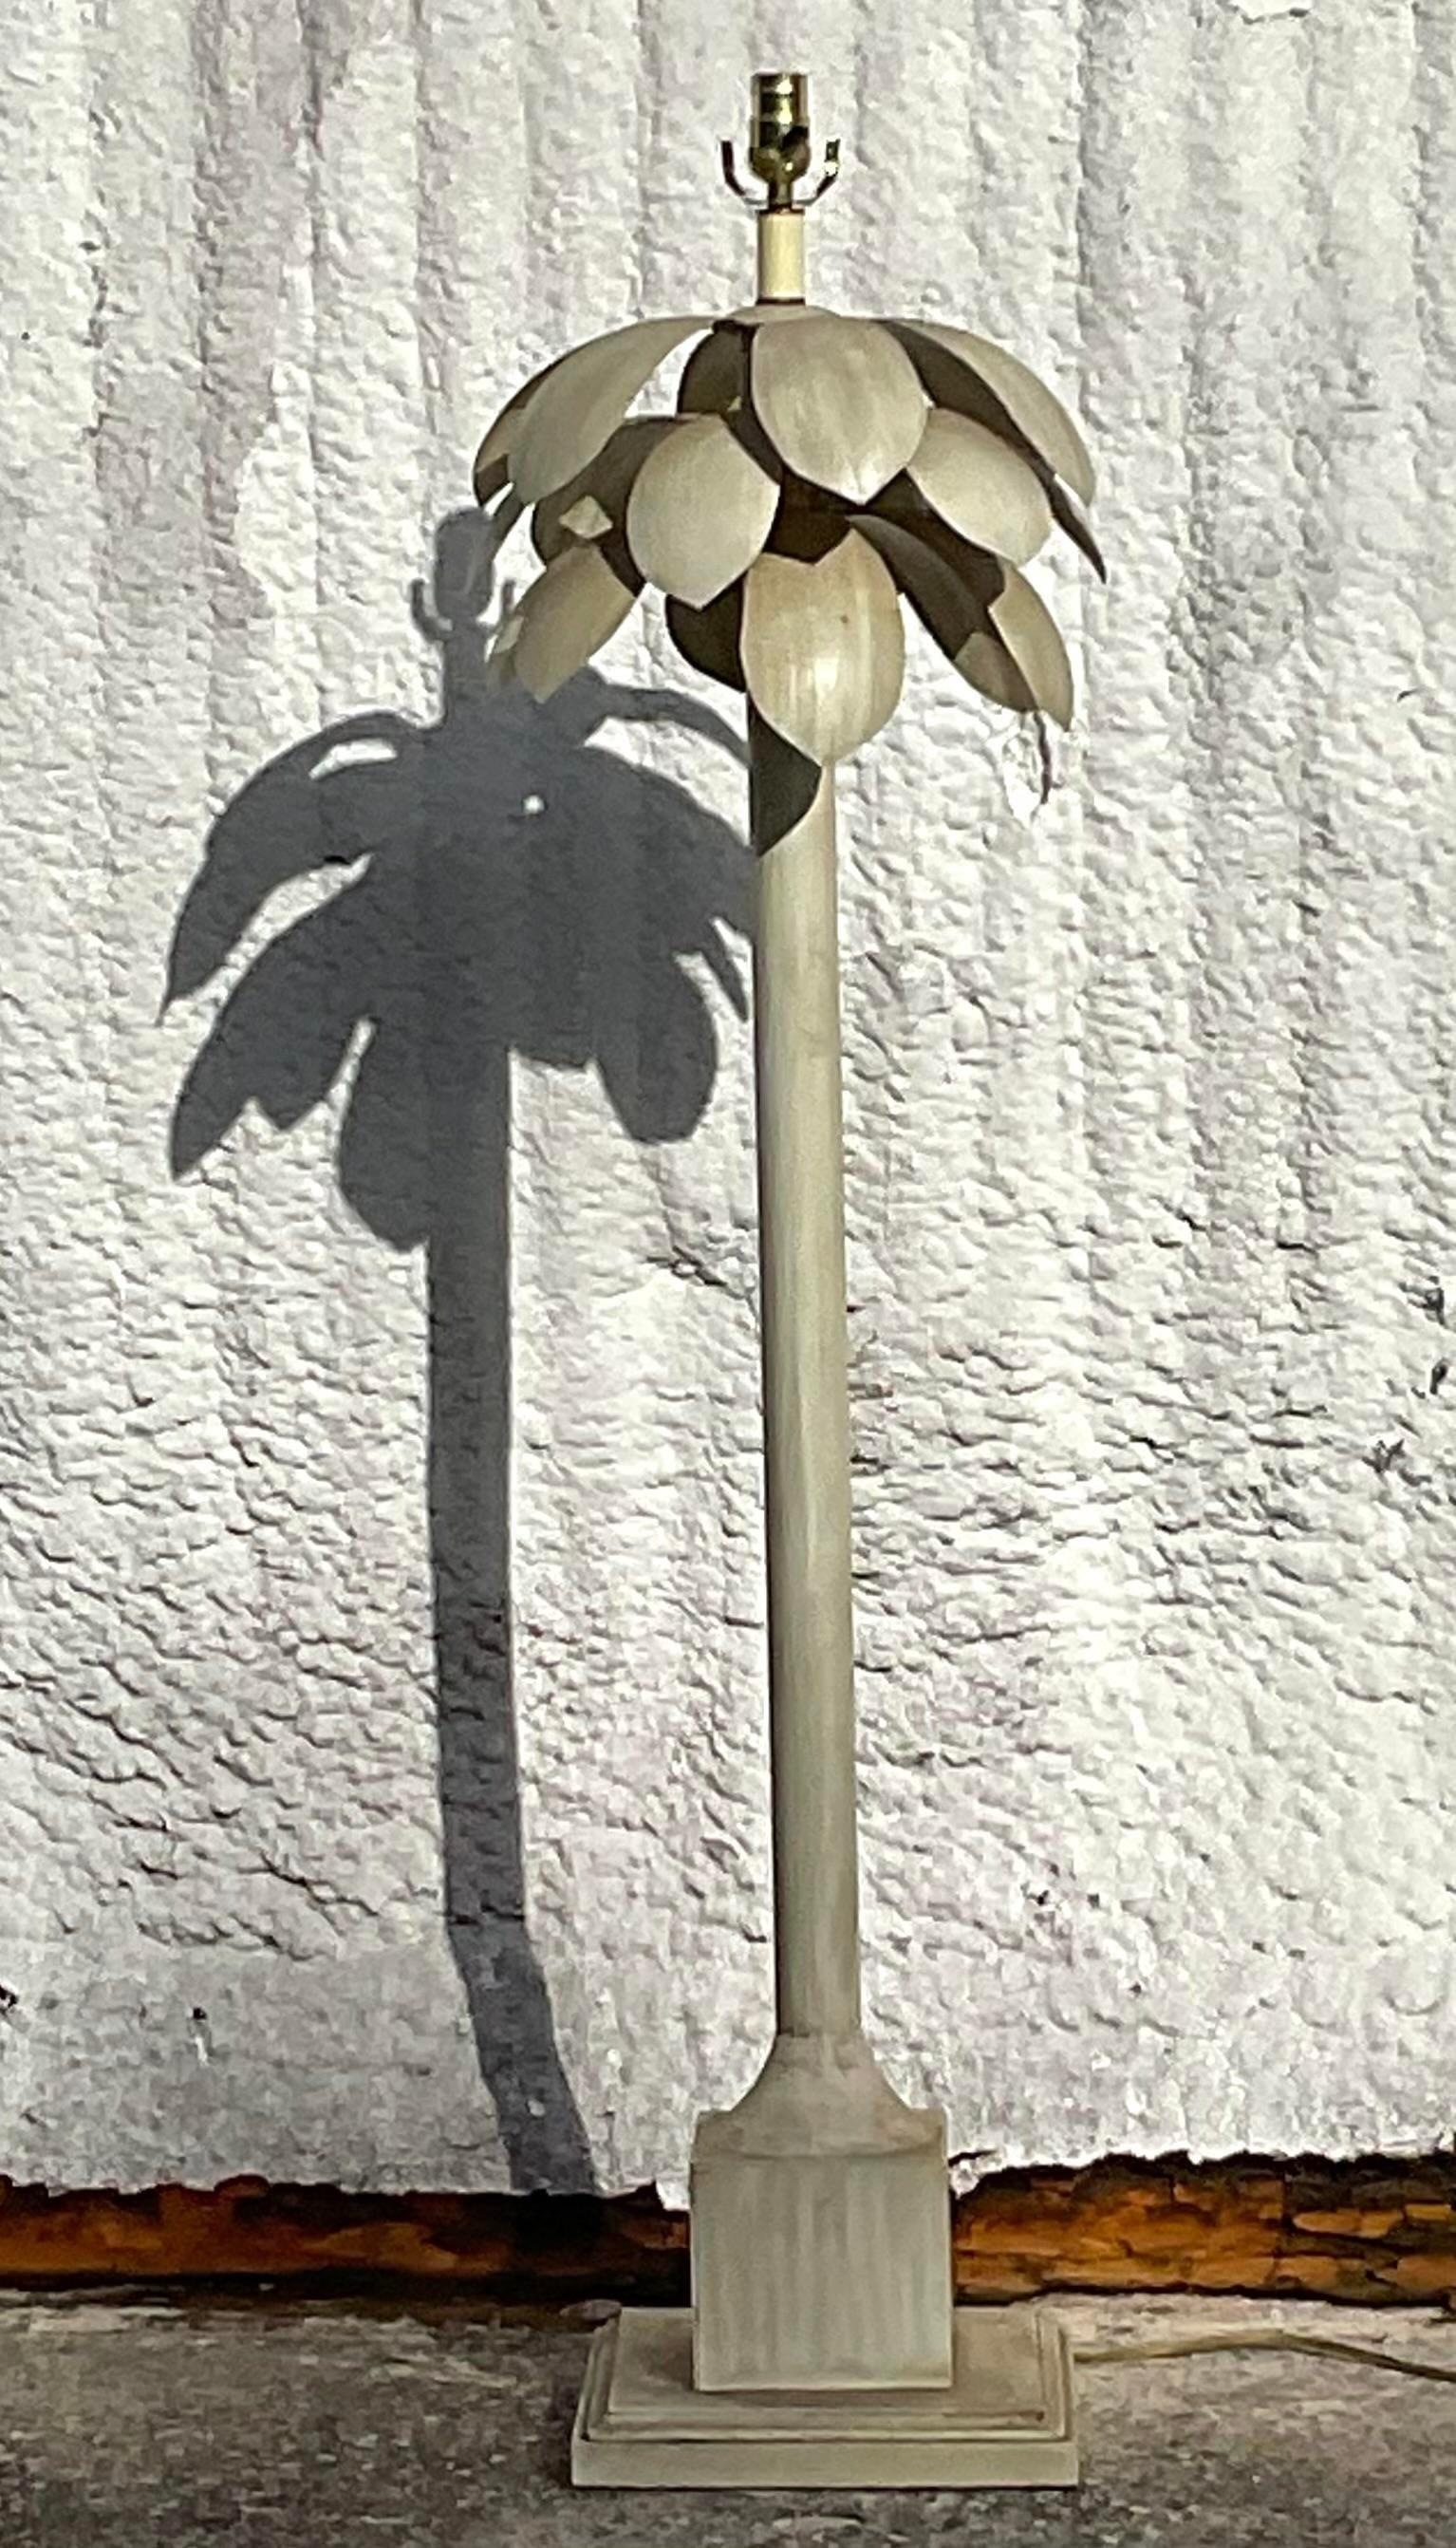 Un fabuleux lampadaire Coastal vintage. Un design chic de palmier avec de lourdes feuilles de palmier au sommet. Cadre en métal peint de couleur écru. Acquis d'une propriété de Palm Beach.